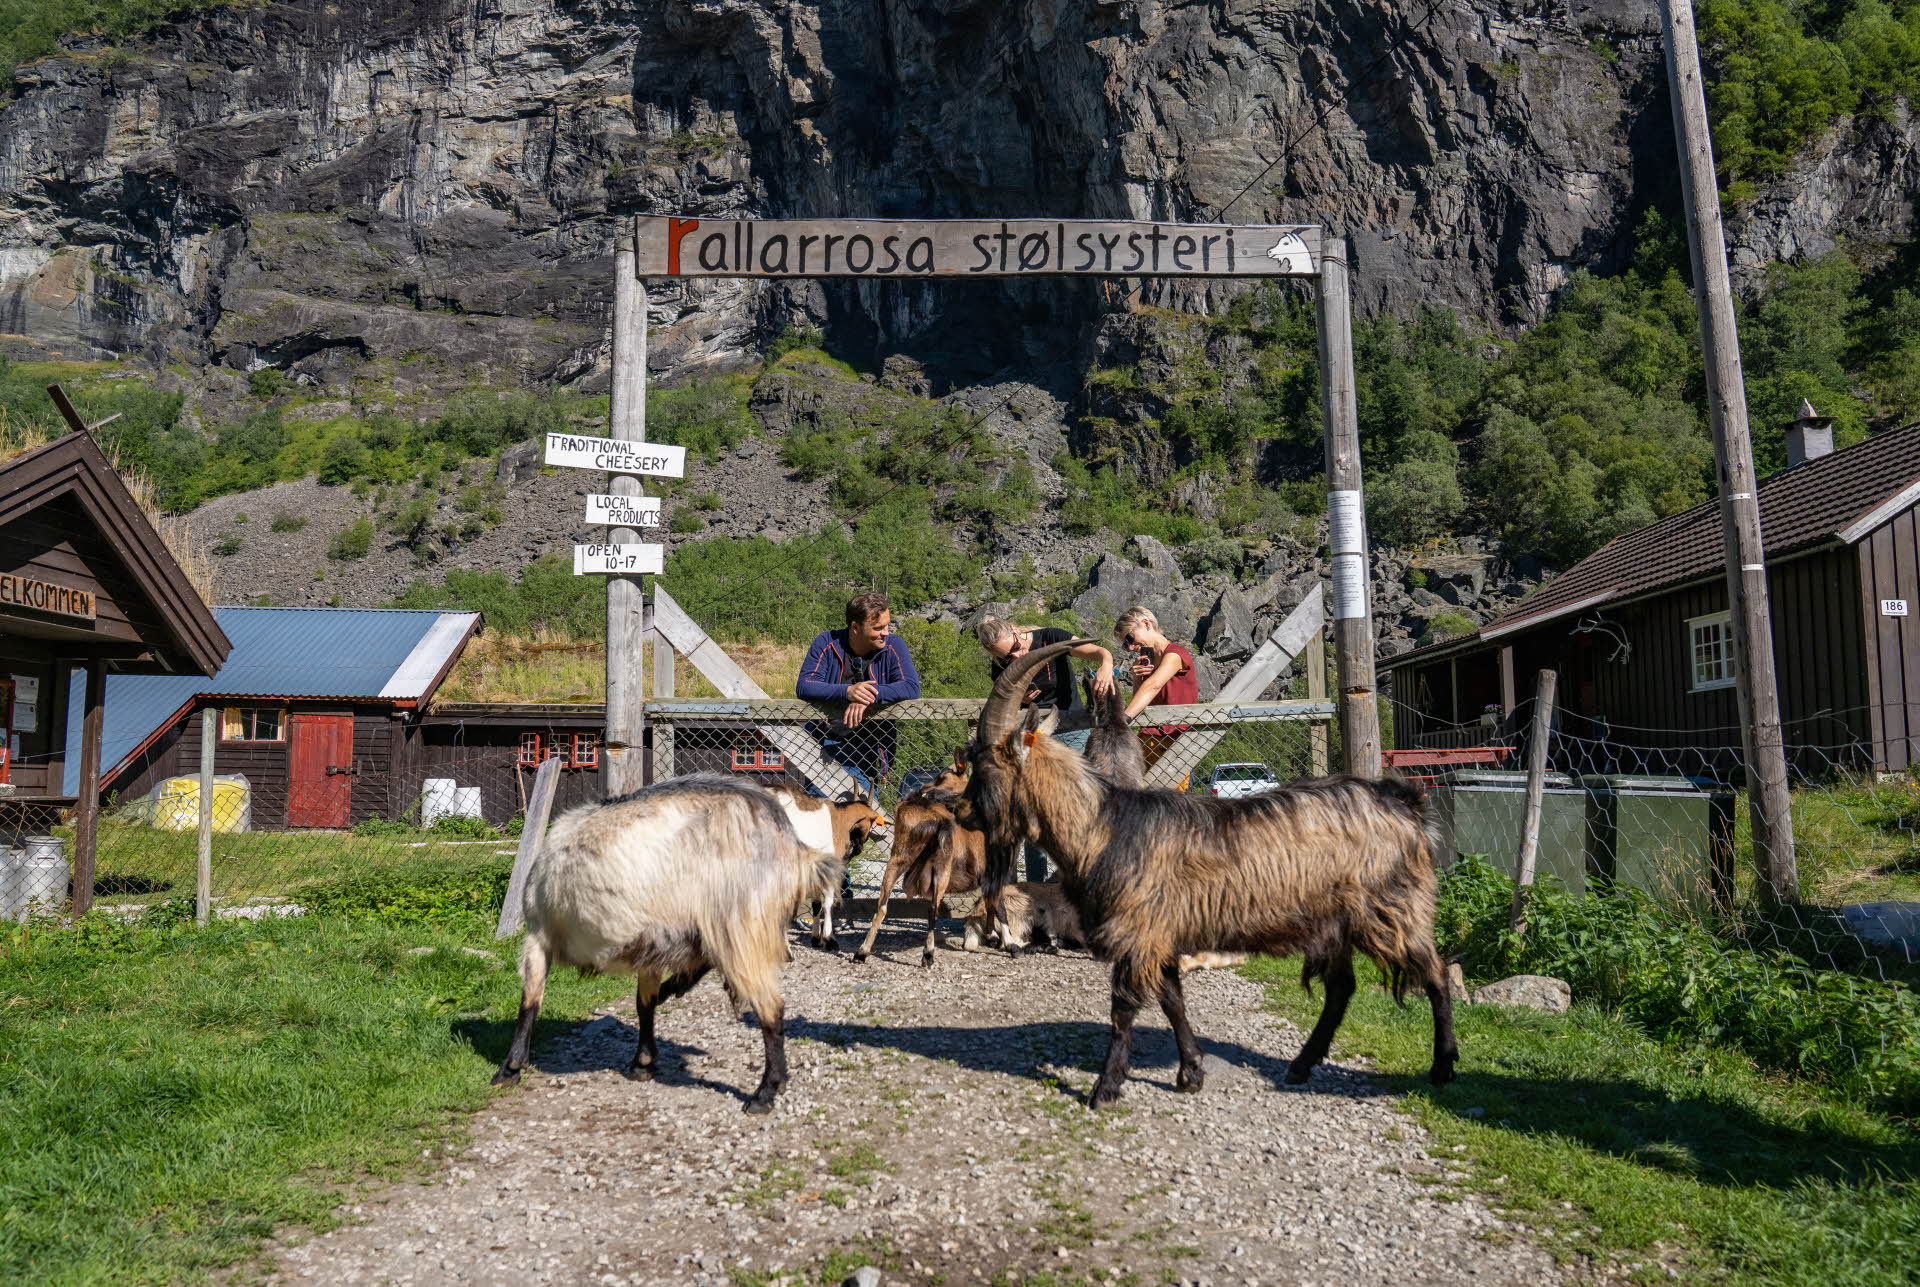 Unas cabras delante de la puerta de una granja de la montaña. Tres personas apoyadas en la puerta.